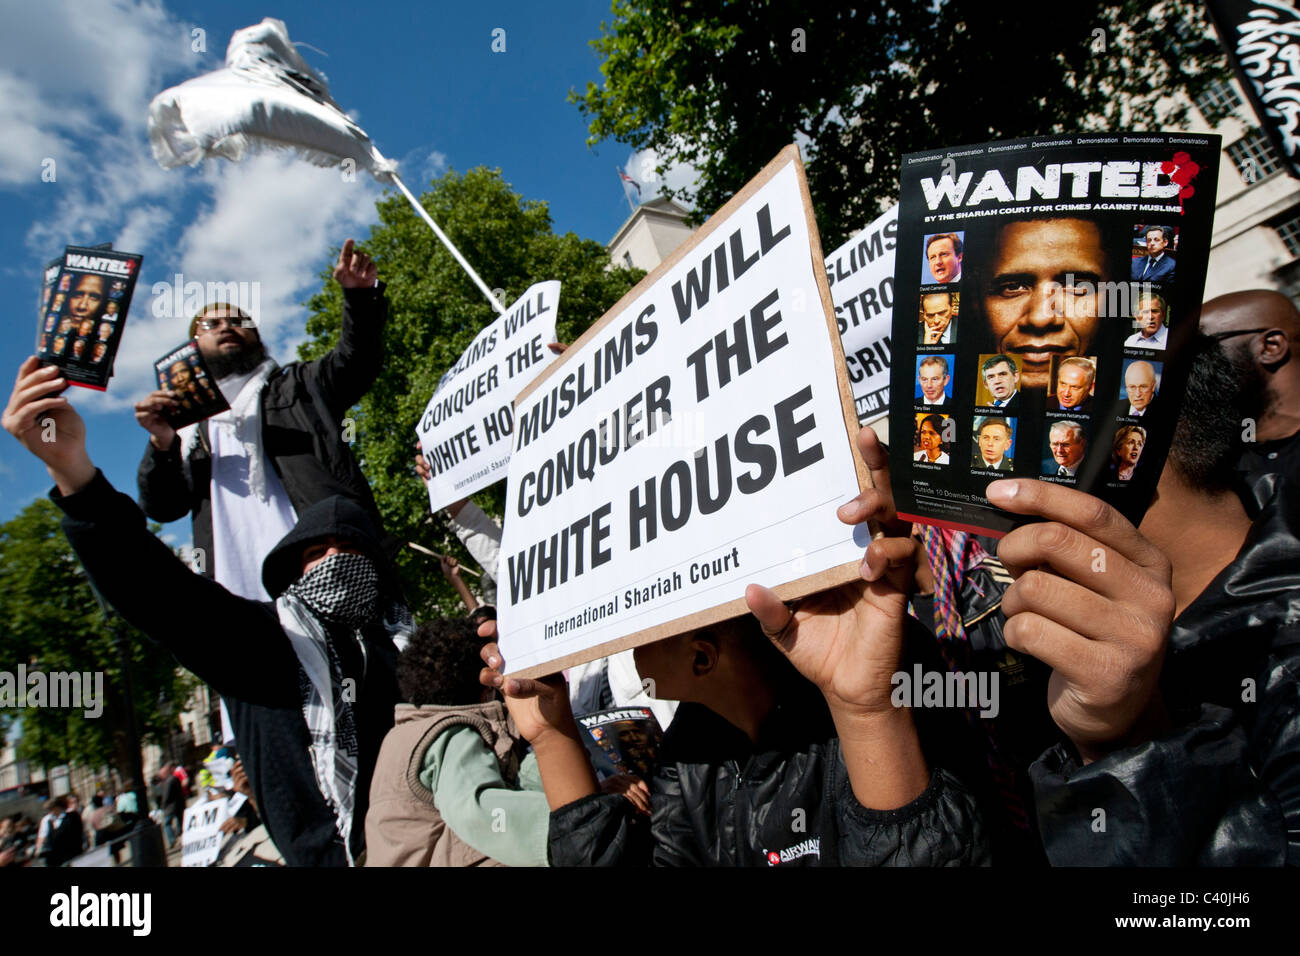 Le tribunal islamique pour les crimes contre les musulmans est titulaire voulait des affiches pour le président américain Barack Obama à Whitehall au cours de sa visite d'état Banque D'Images